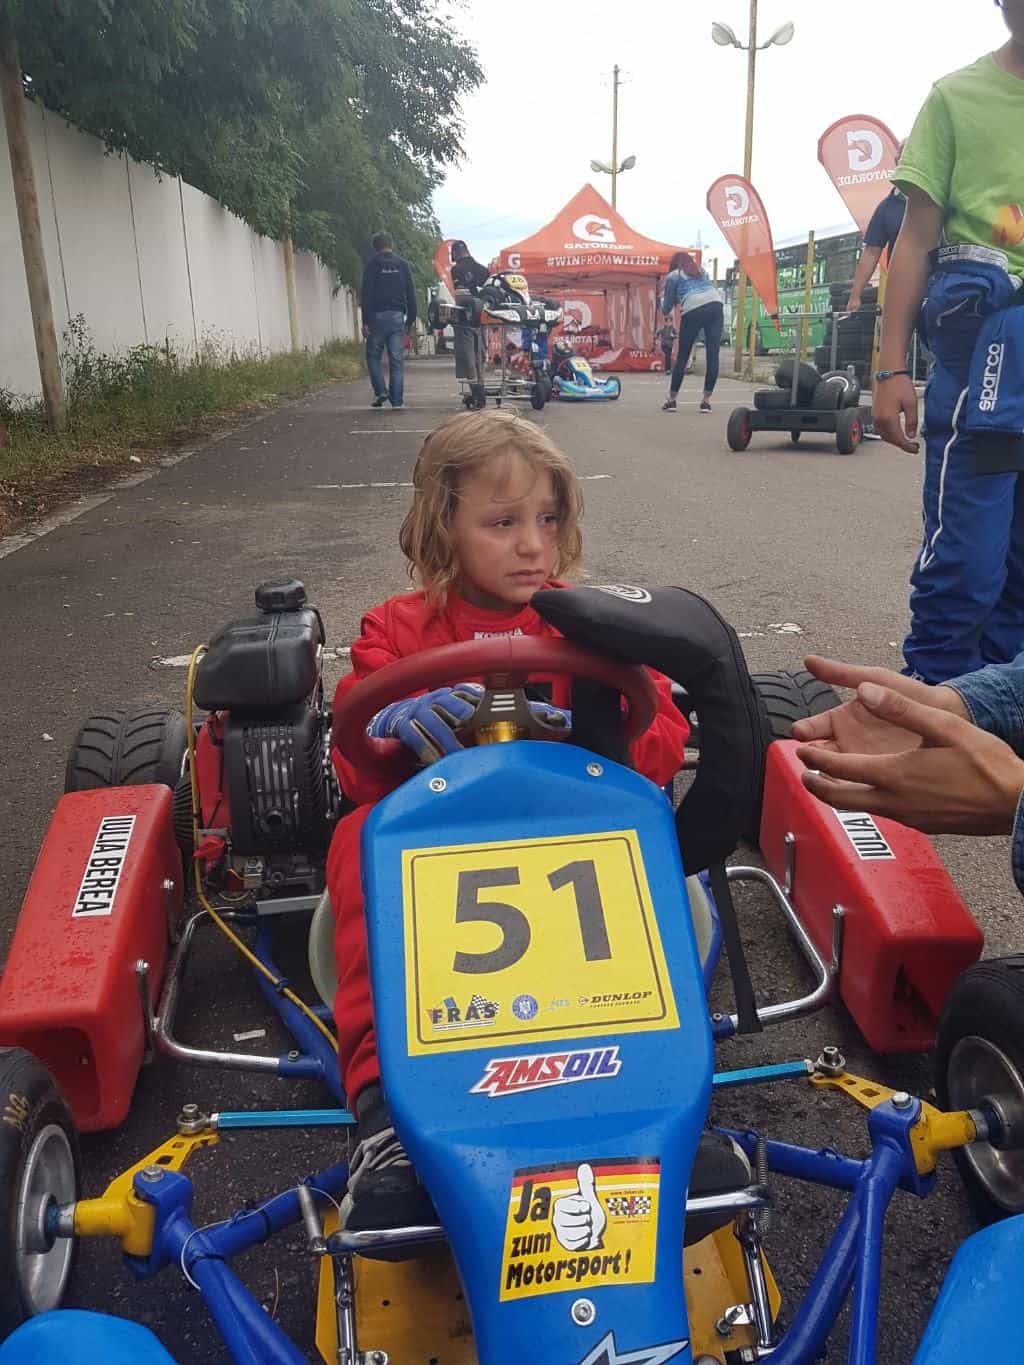 GP24 Ladies: Întrebări și răspunsuri cu Iulia Berea, Campioana la Karting care trece la mașini